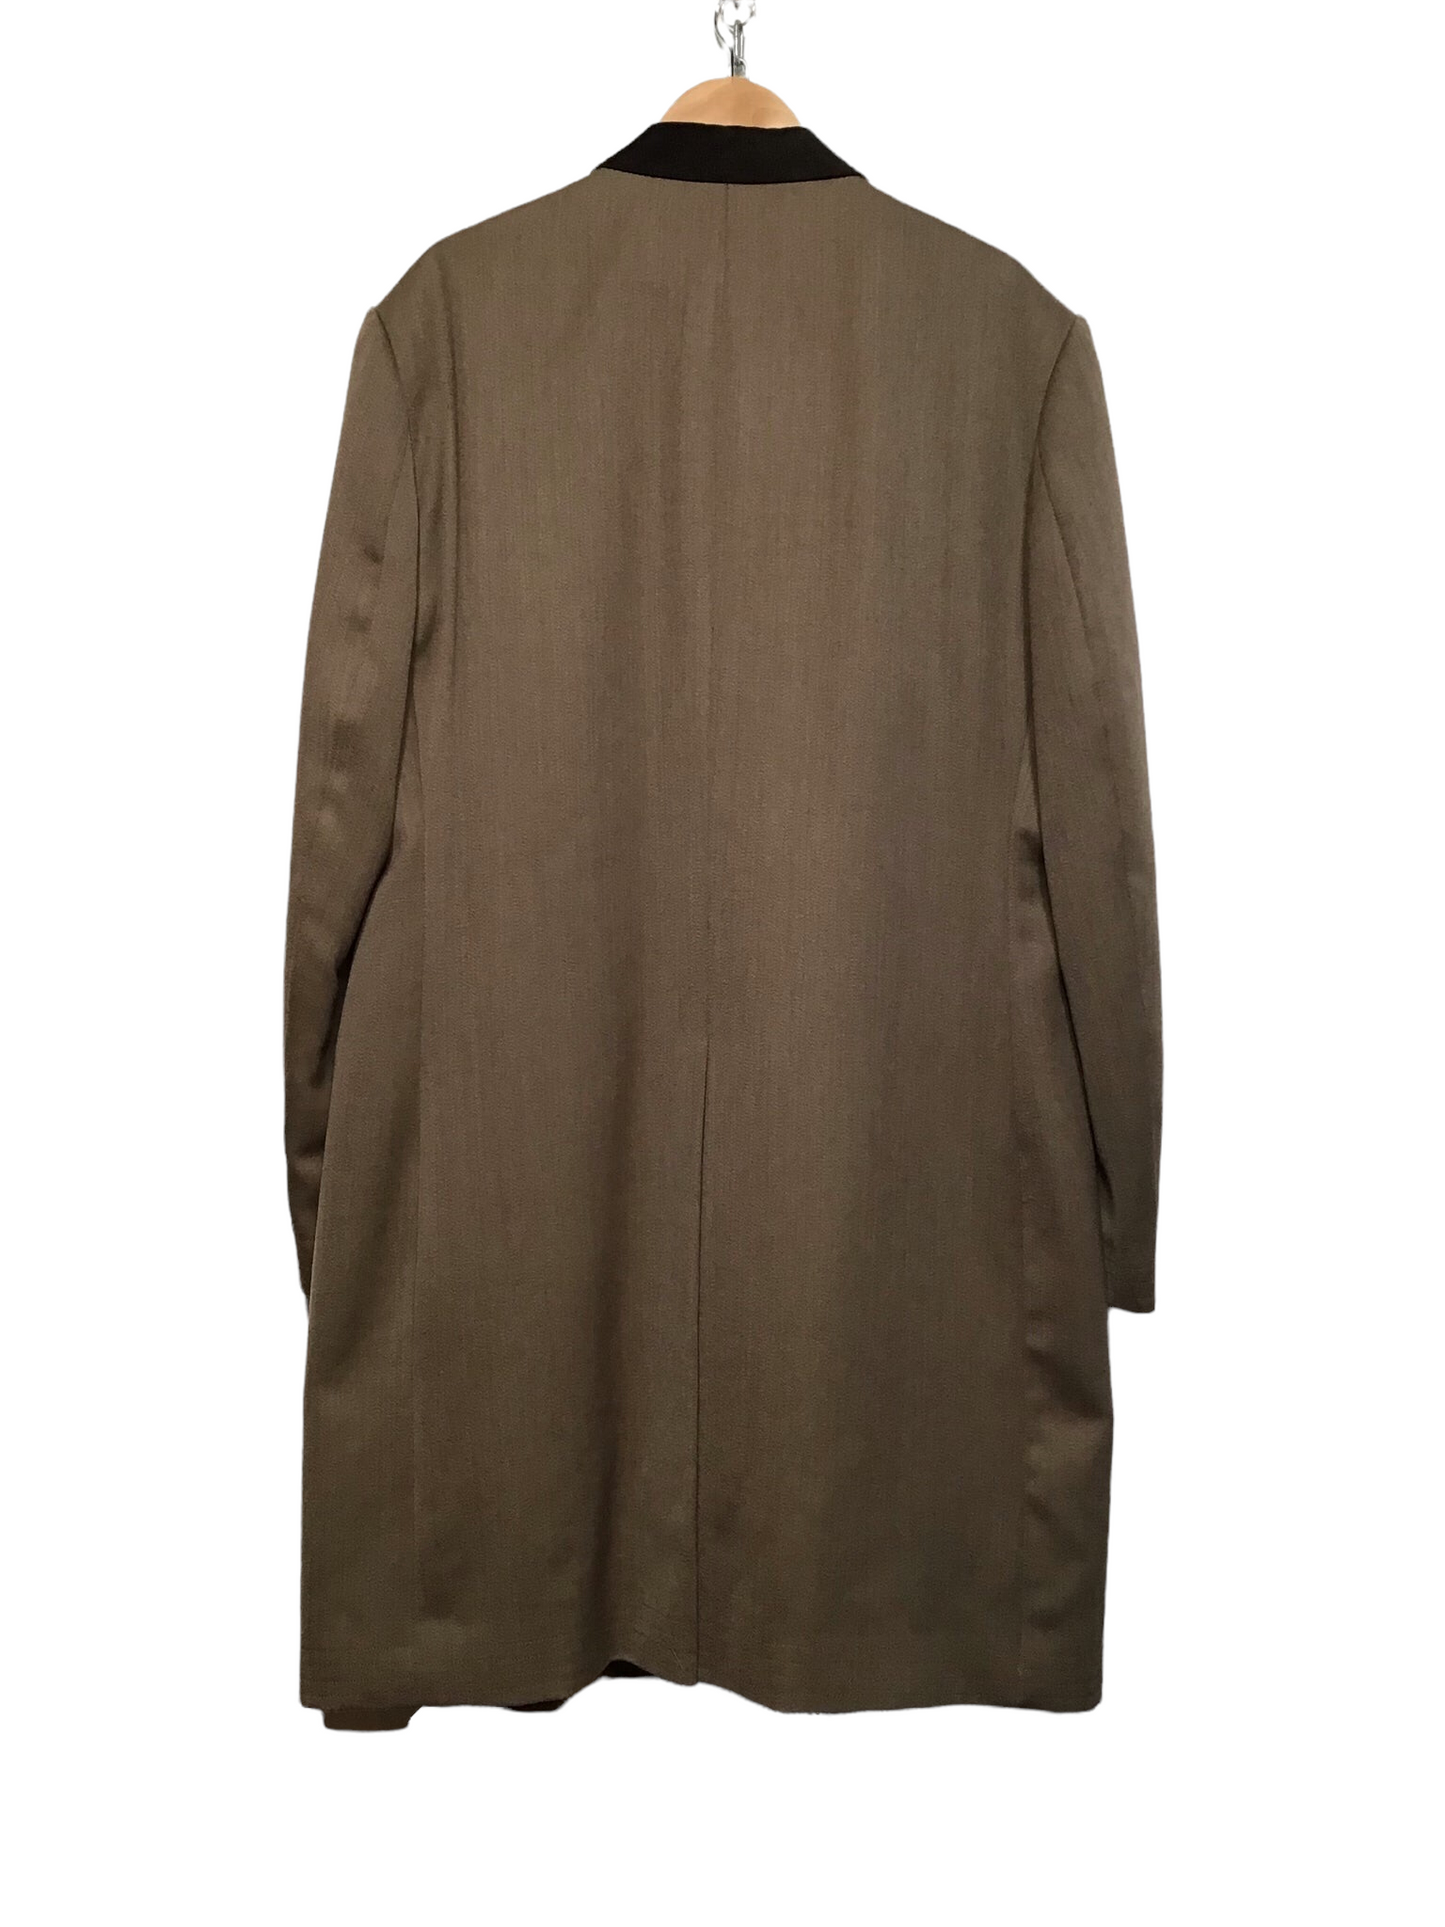 Brown Formal Coat (Size L)